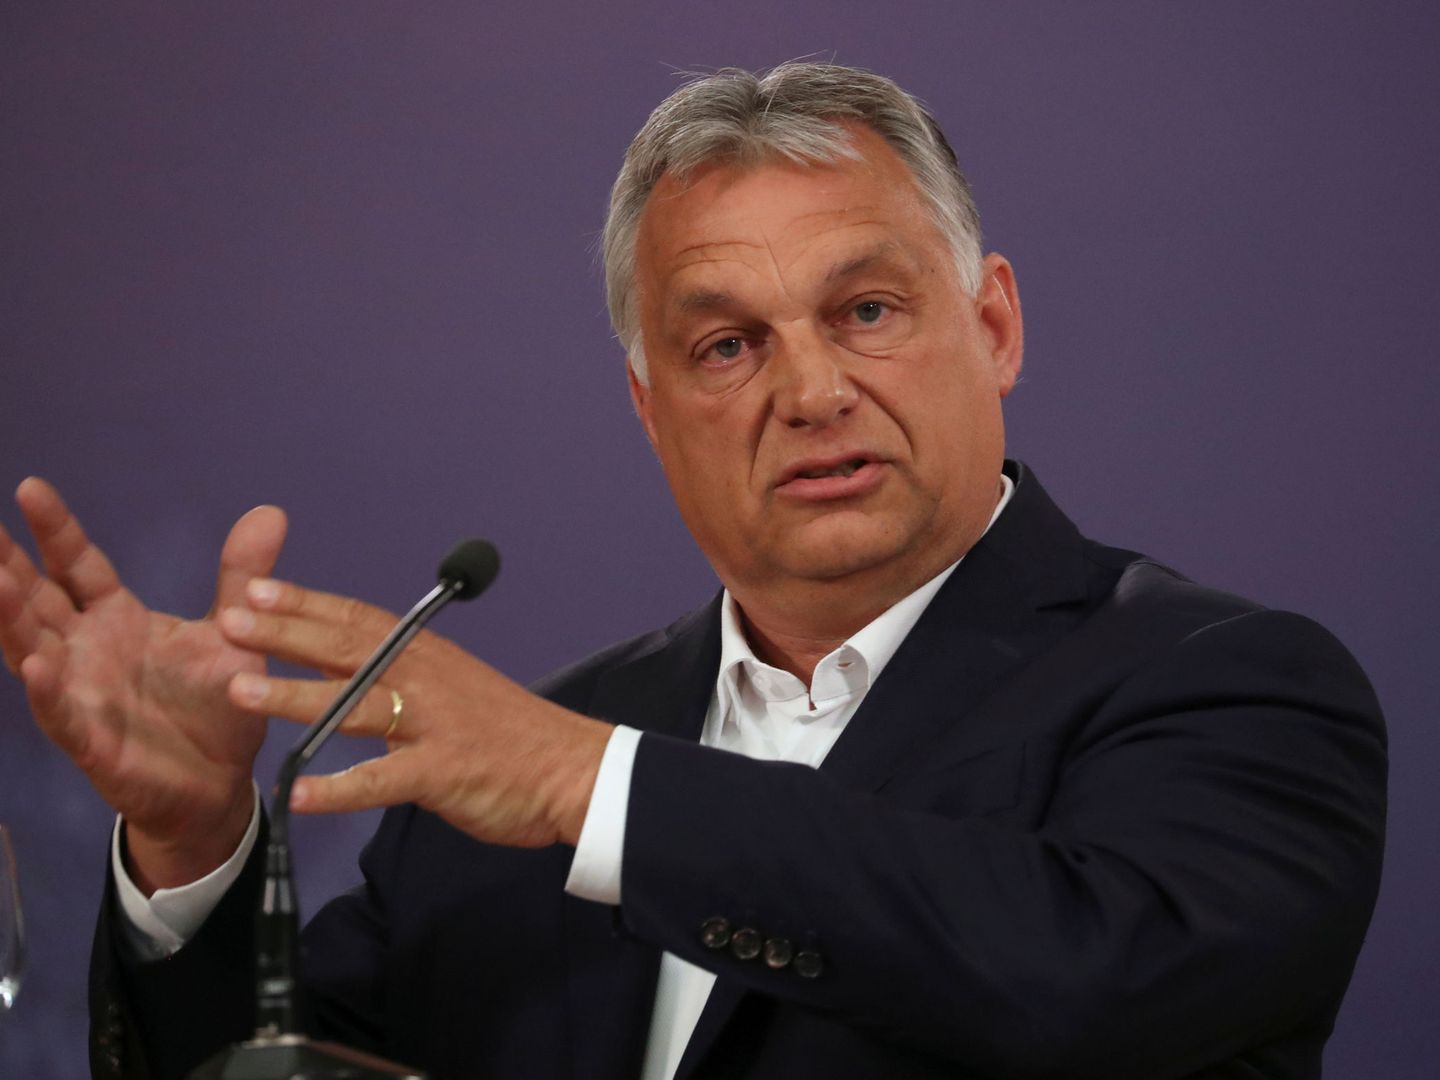 Viktor Orbán. (Reuters)